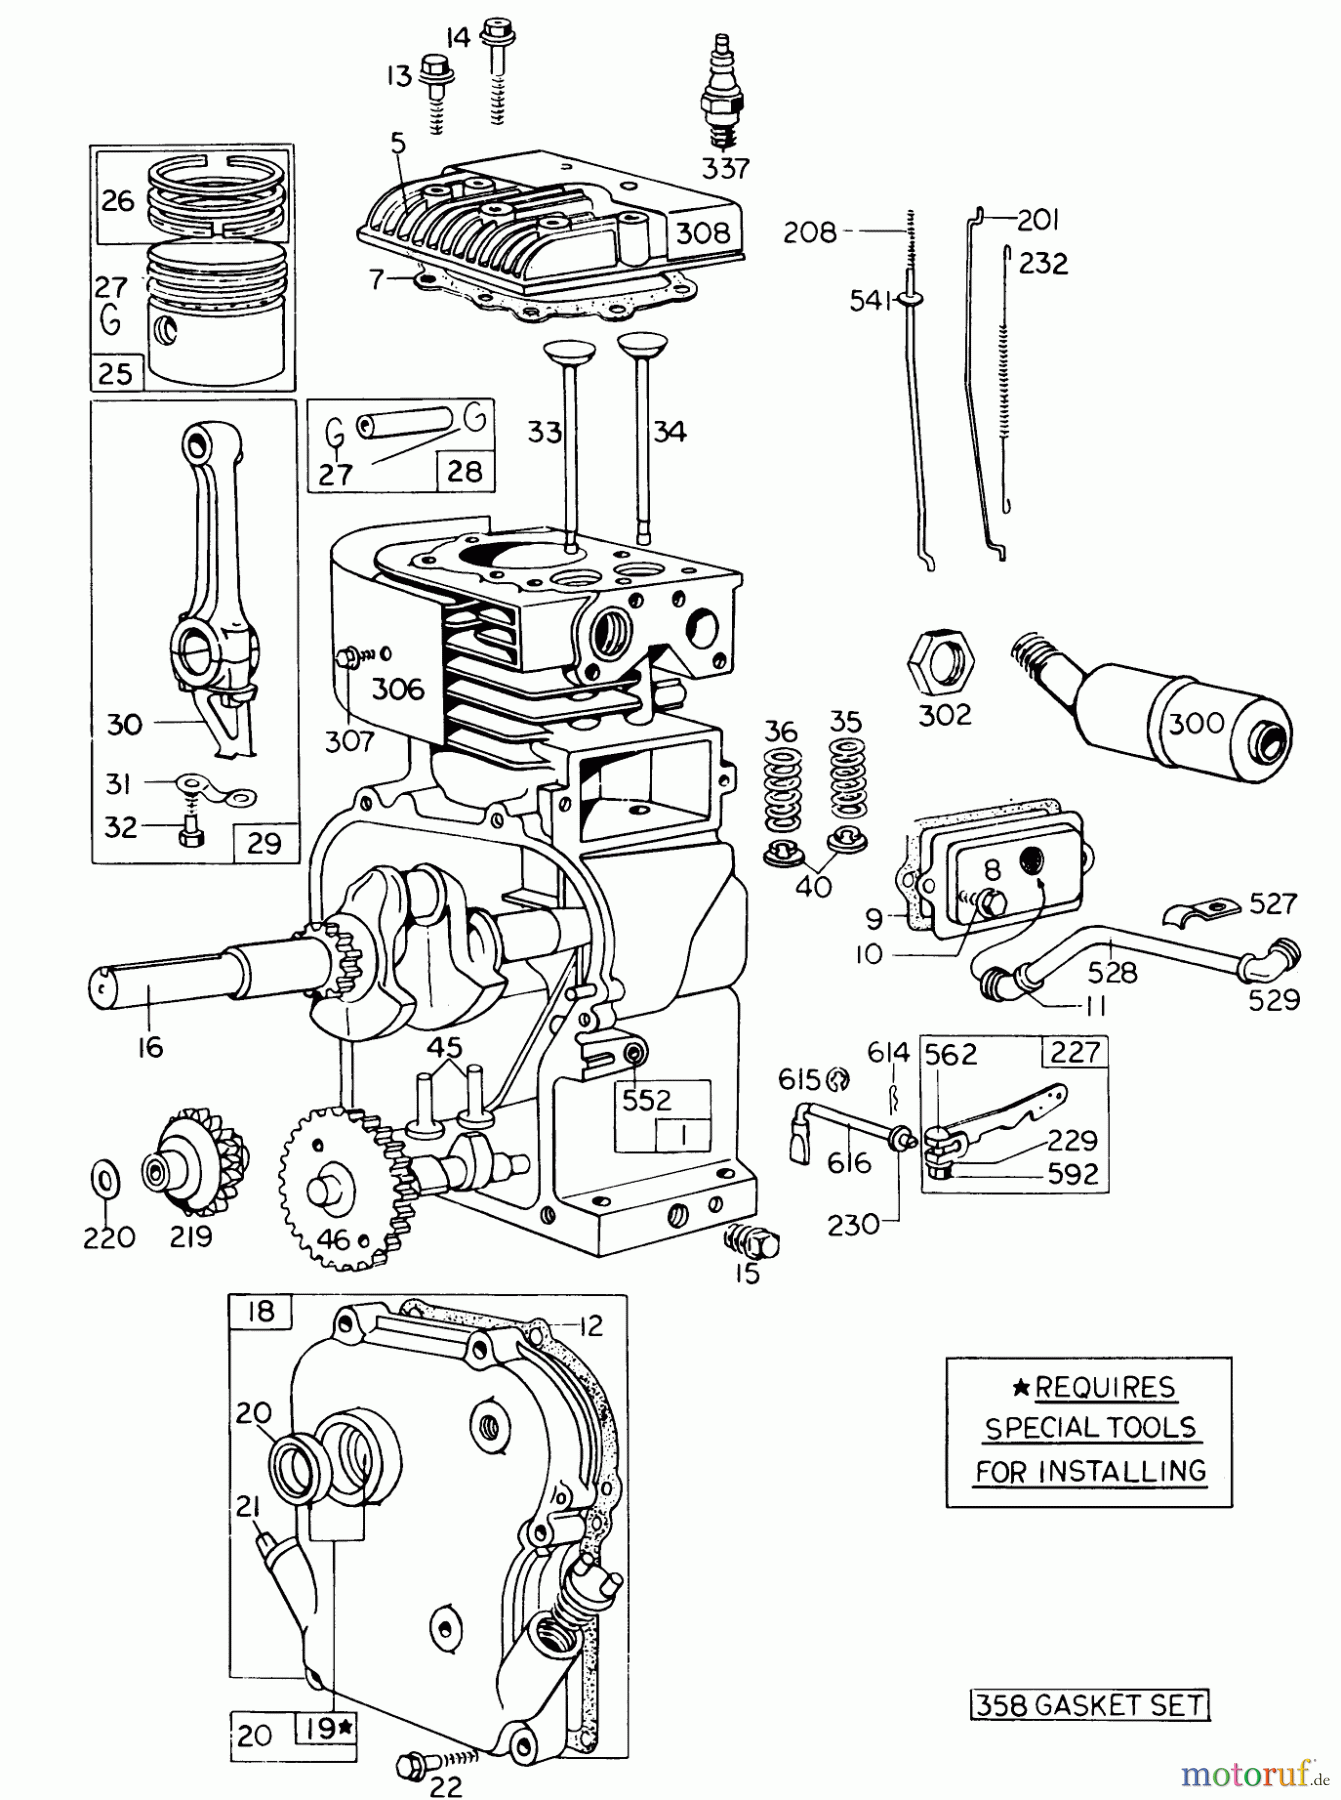  Laubbläser / Laubsauger 62912 - Toro 5 hp Lawn Vacuum (SN: 5000001 - 5999999) (1975) ENGINE MODEL NO. 130202 TYPE 0492 BRIGGS & STRATTON